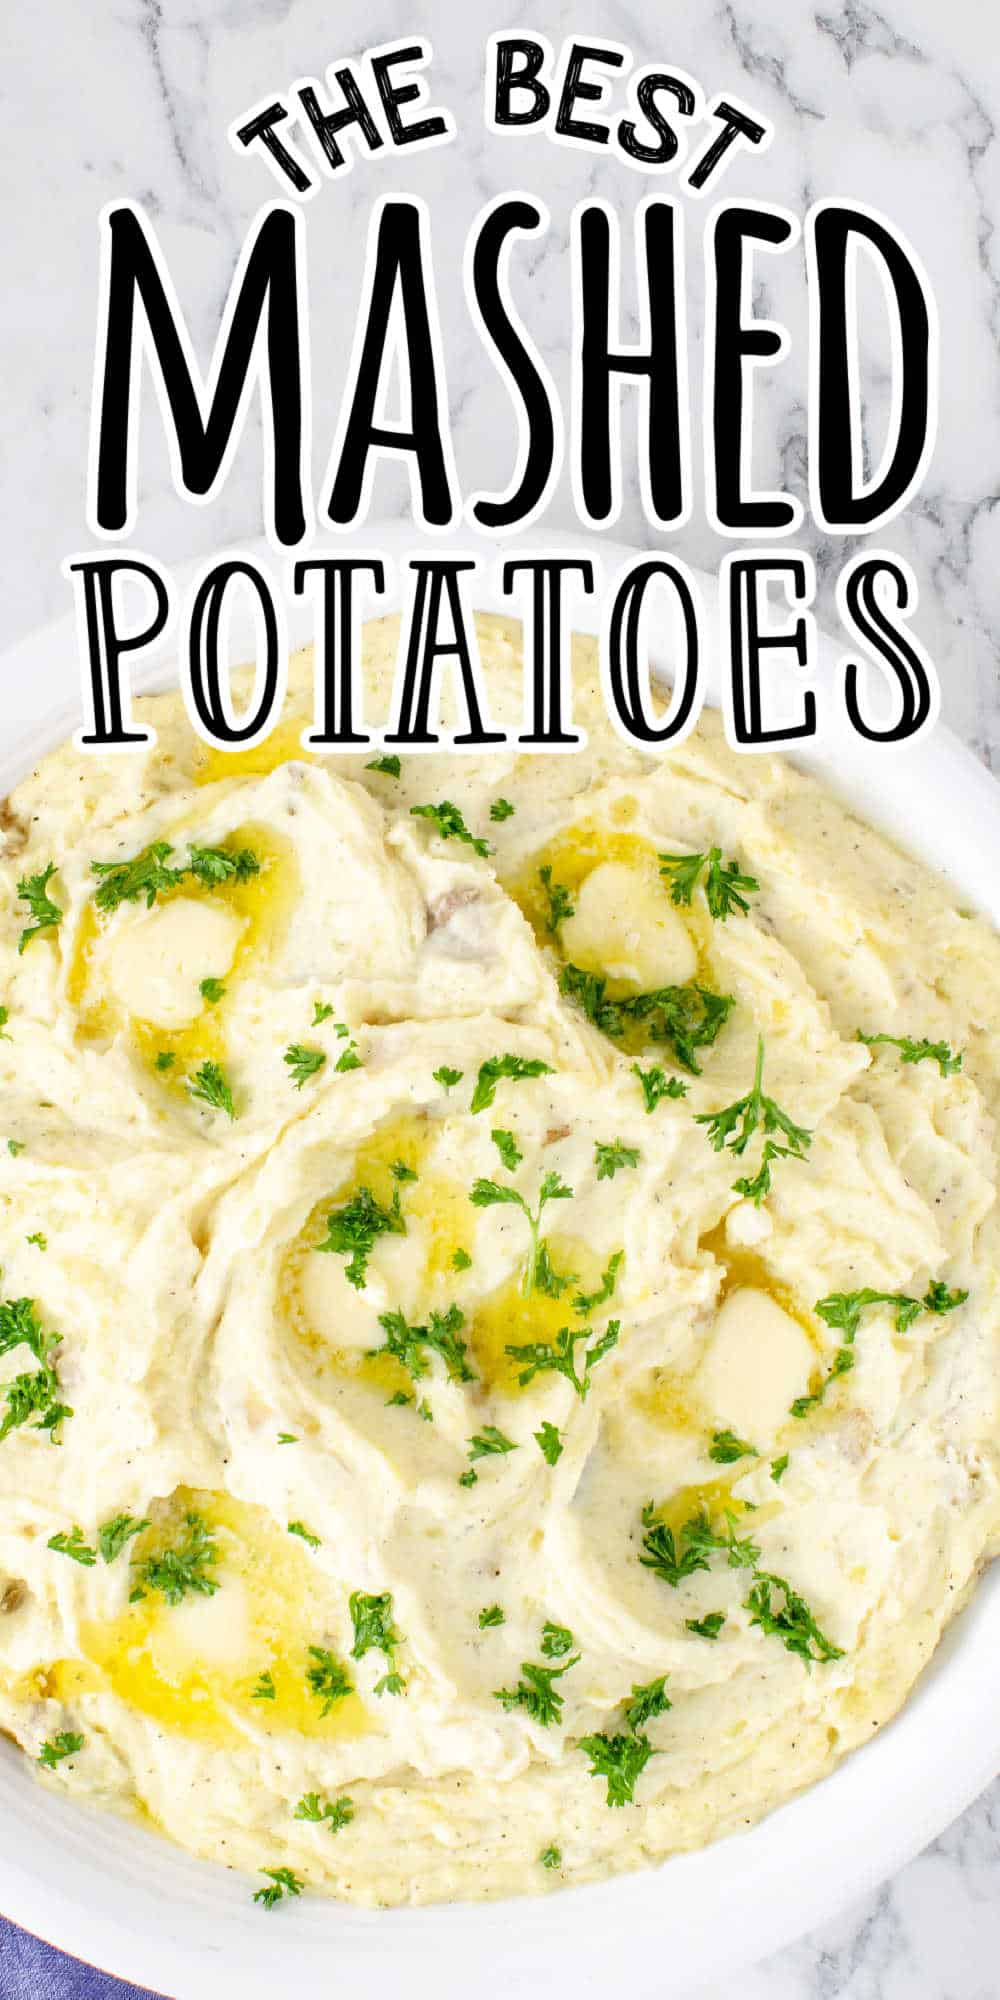 The Best Mashed Potatoes Recipe • MidgetMomma